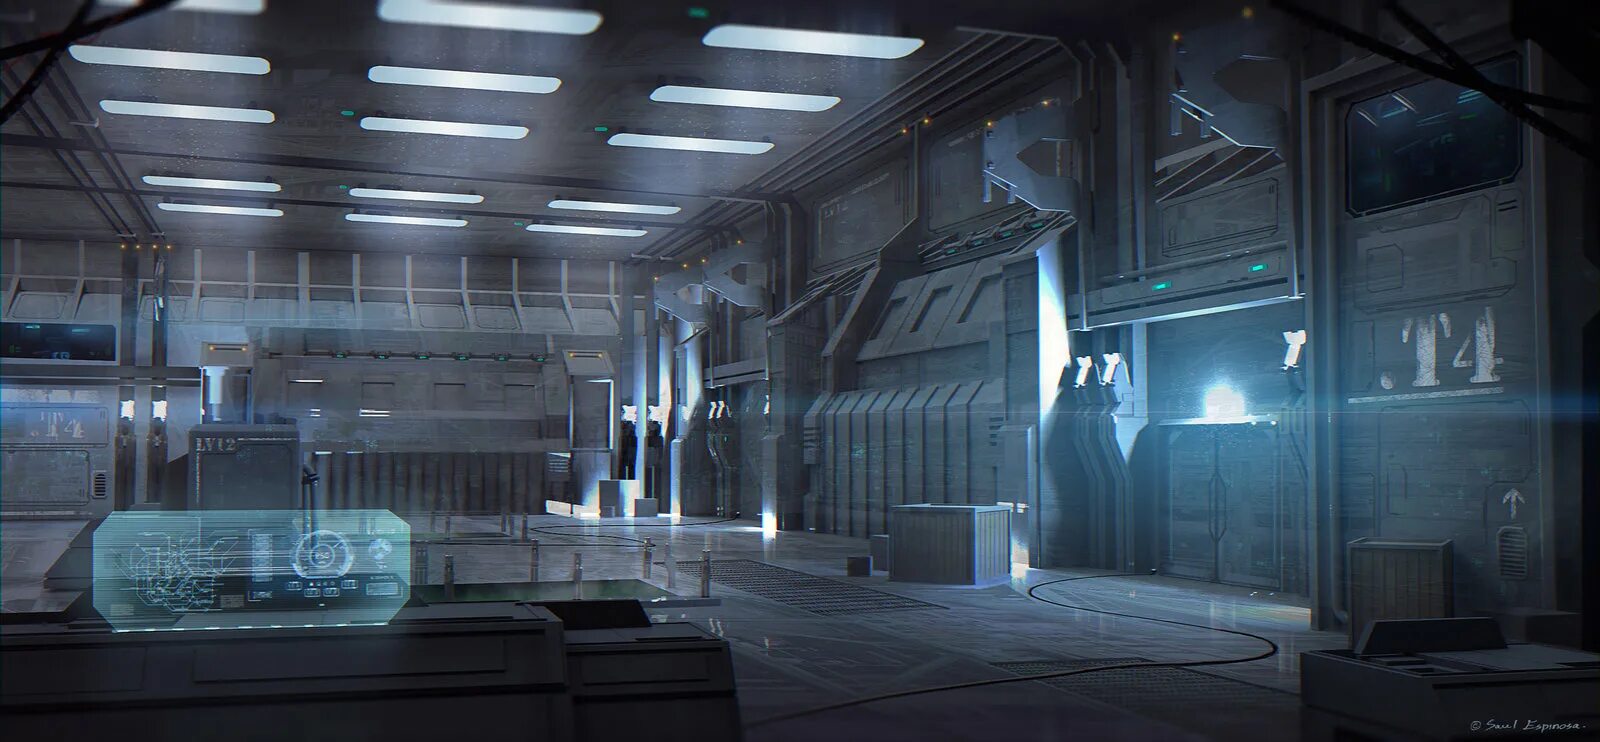 Лаборатория оружия. Sci Fi оружейный склад. Локации амонг АС космический корабль. Тренировочный зал Sci Fi. Космический корабль будущего внутри амонг АС.